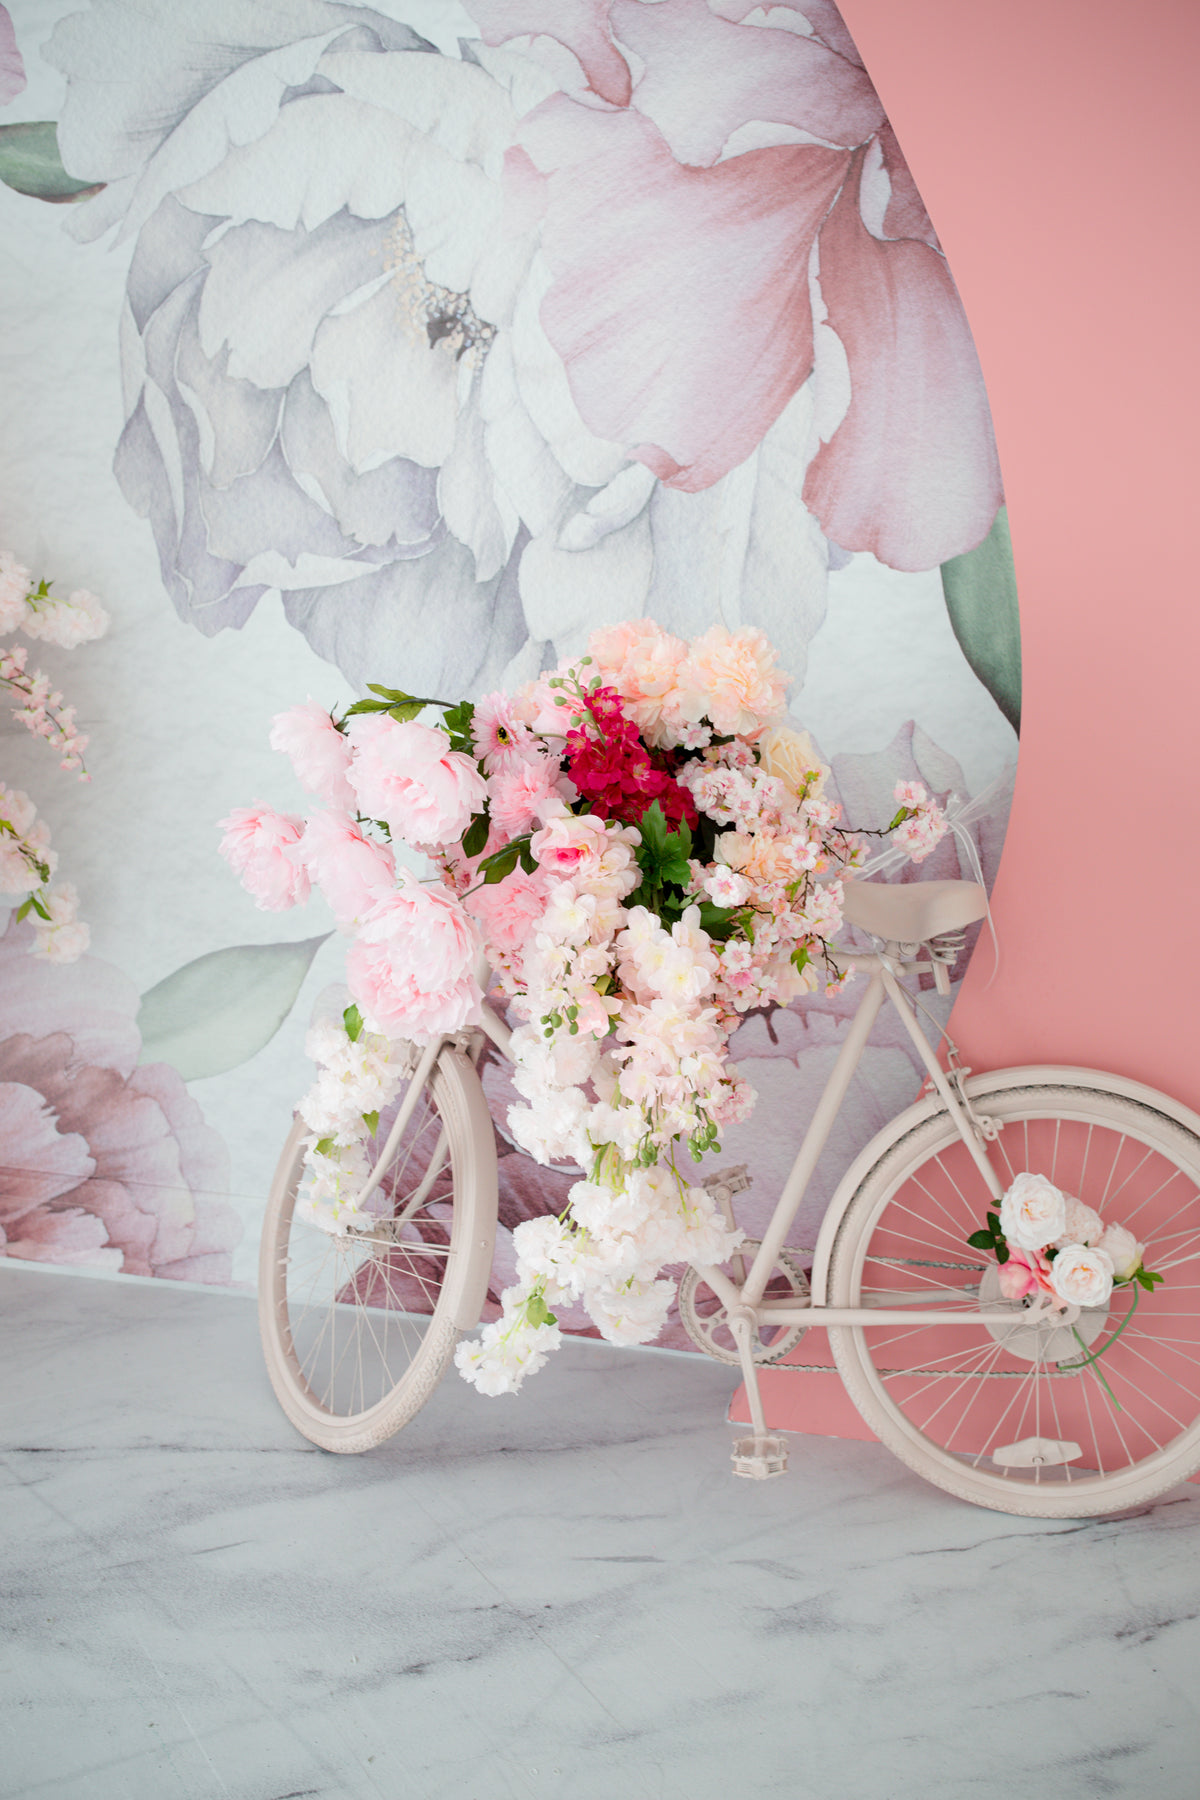 一辆挂满鲜花的自行车靠在花墙上